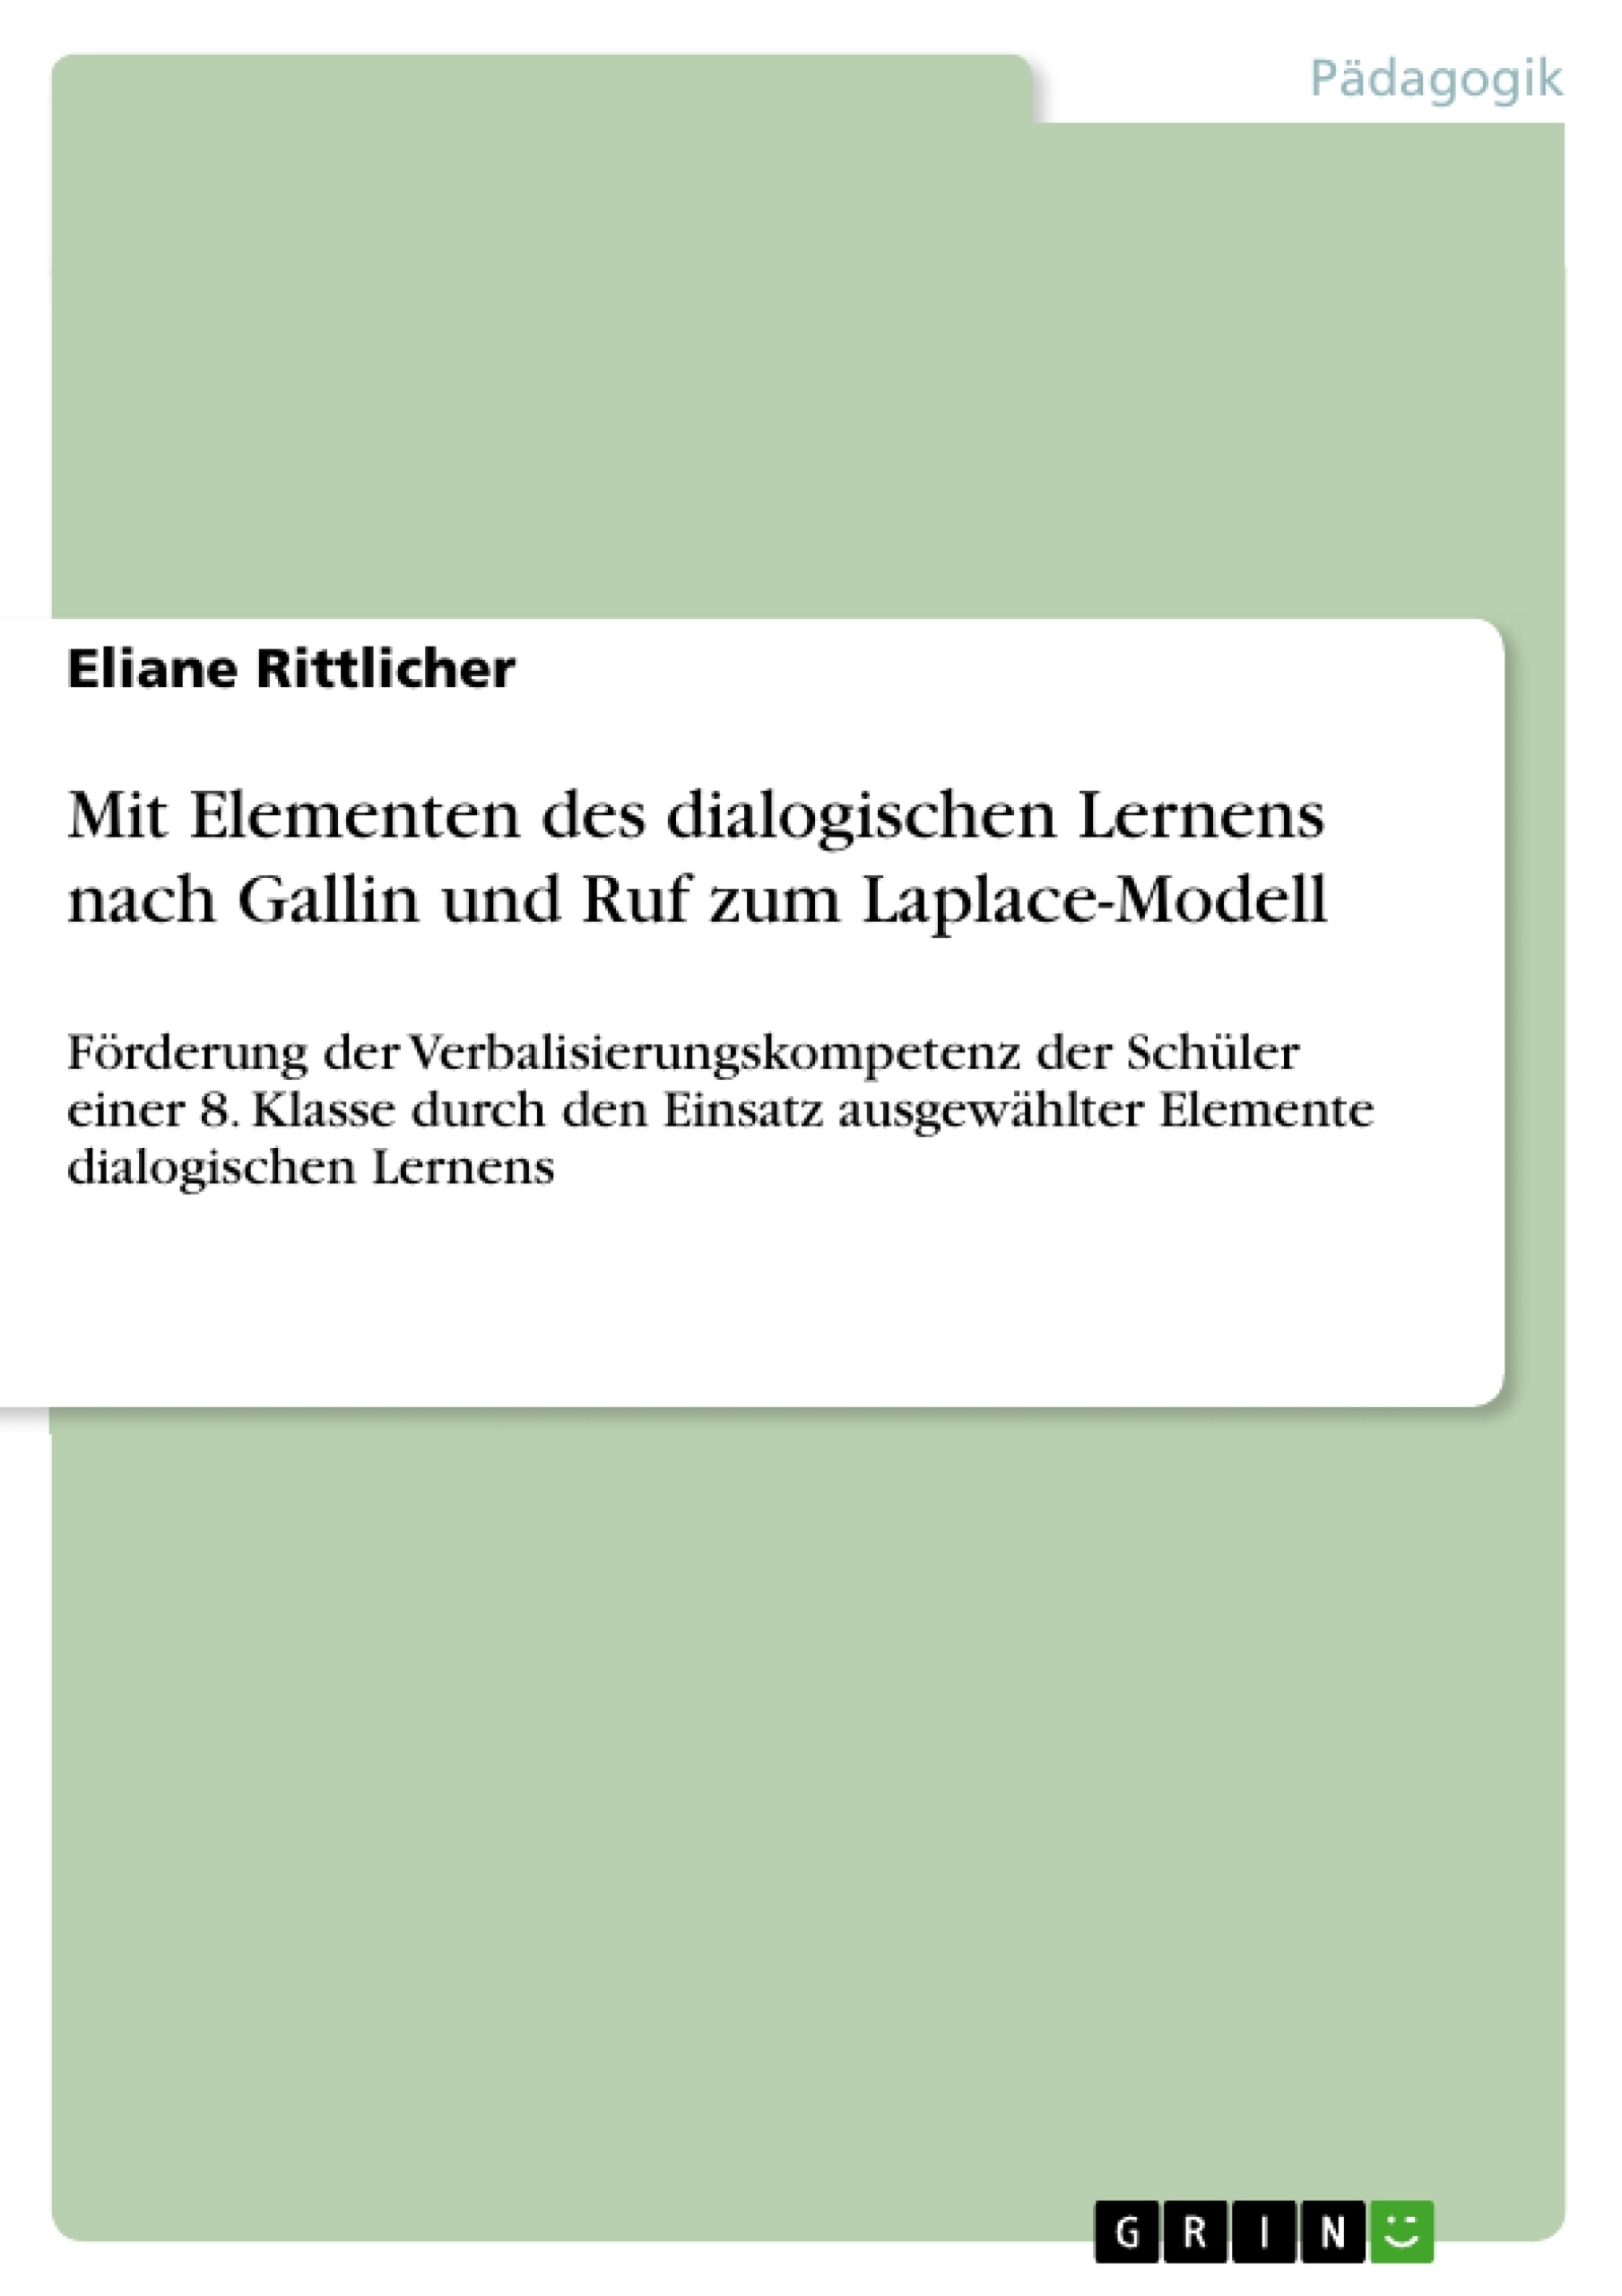 Título: Mit Elementen des dialogischen Lernens nach Gallin und Ruf zum Laplace-Modell